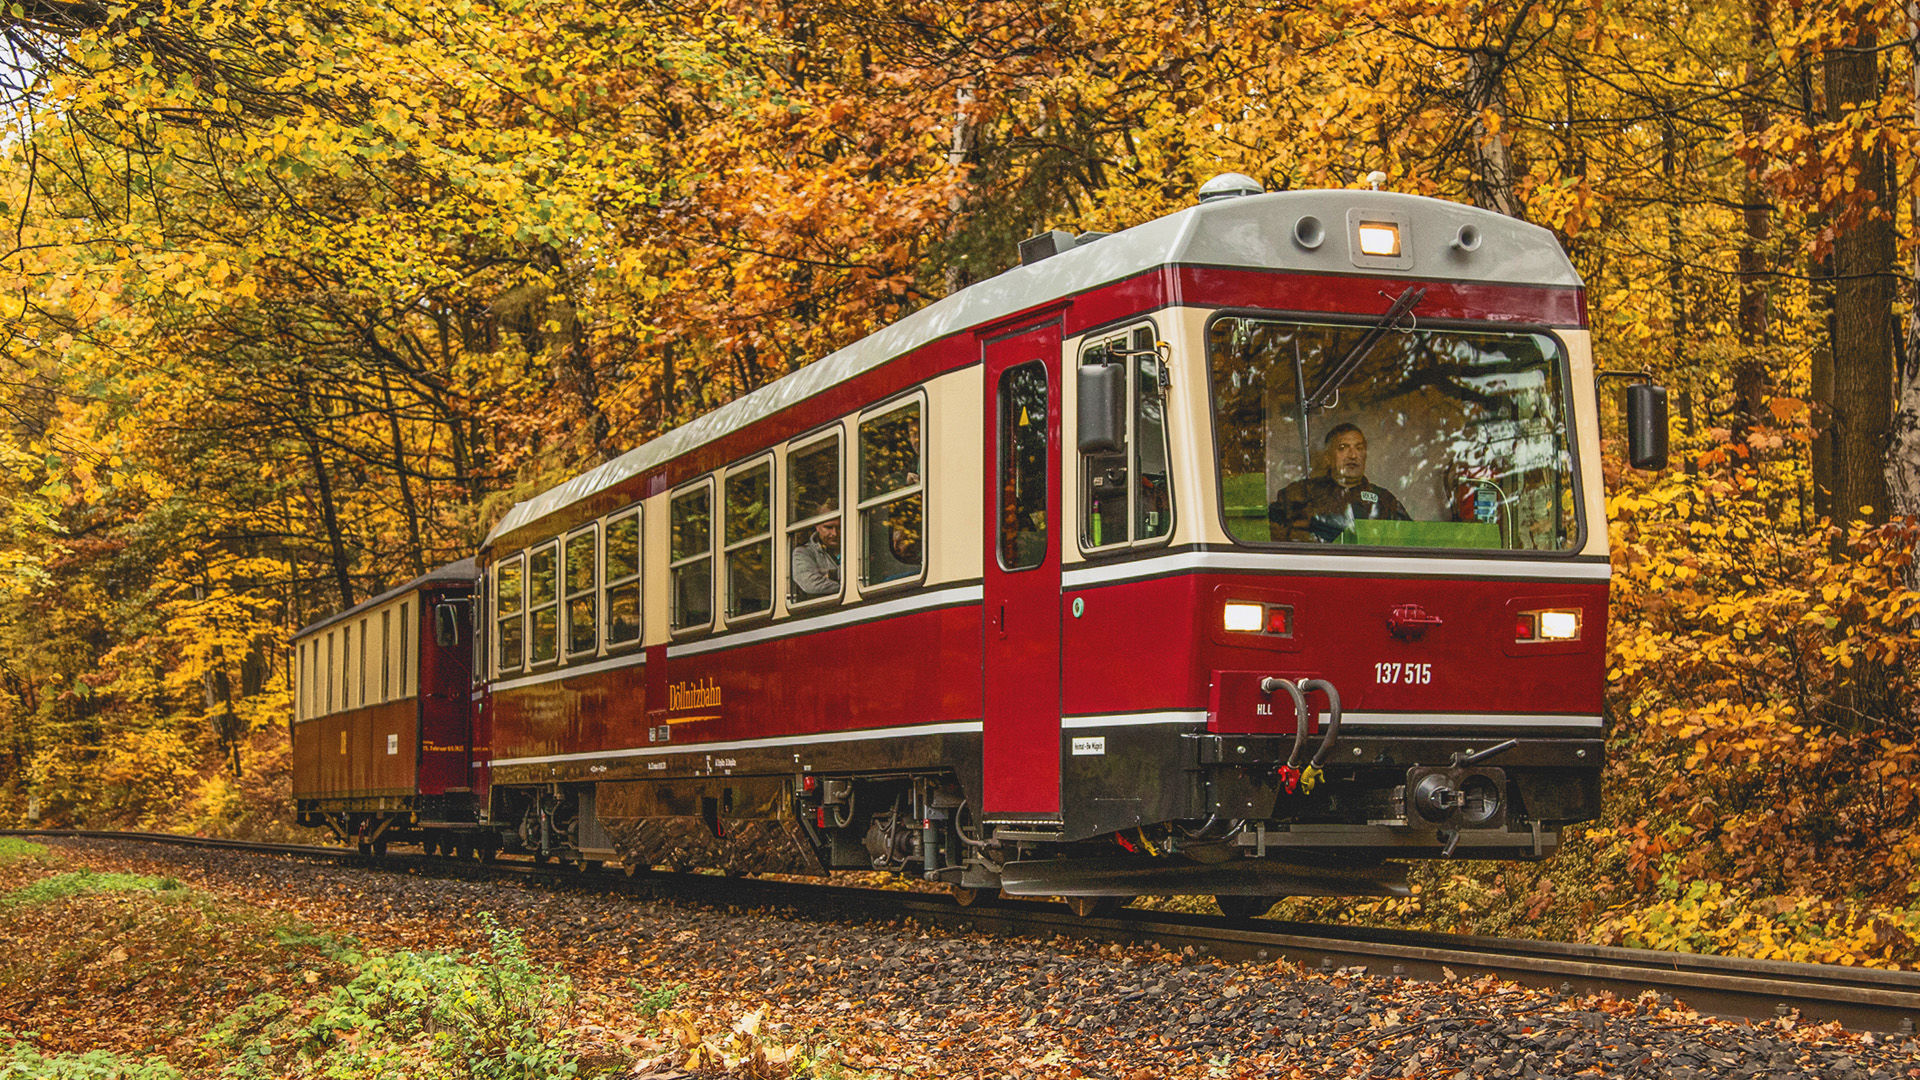 Der neue Triebwagen VT 137 515 der Döllnitzbahn 
© Copyright: communications art - mario england